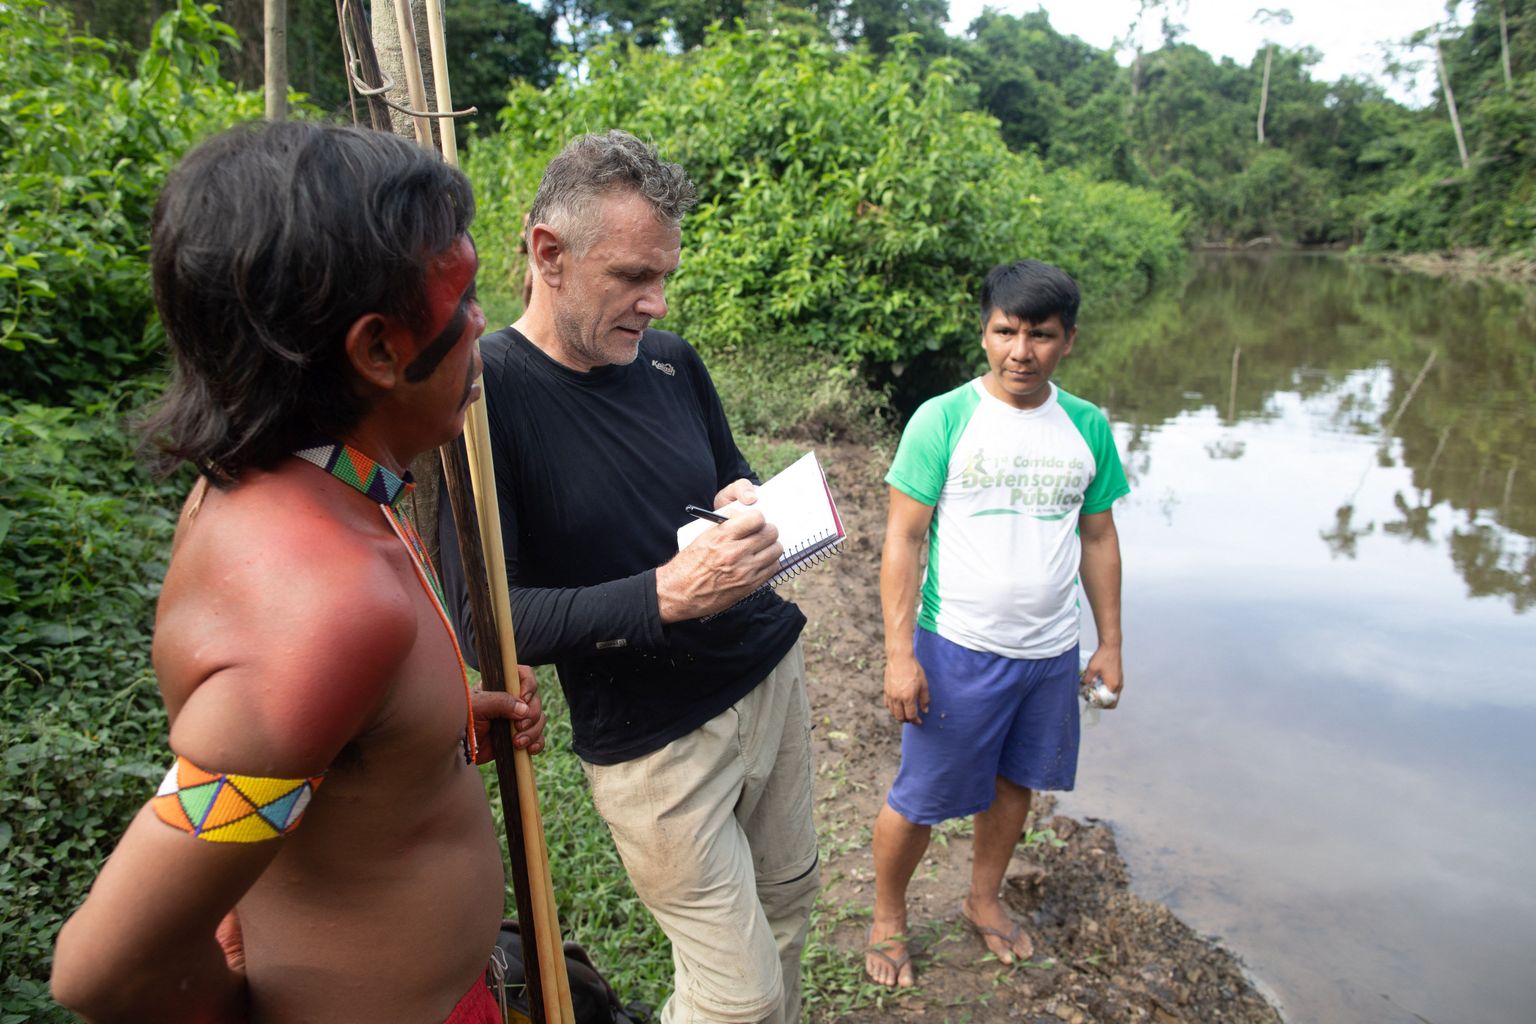 Briti ajakirjanik Dom Phillips (keskel) rääkimas 16. nobembril 2019 Brasiilias Roraima osariigis Aldeia Maloca Papiús kahe põliselanikust mehega